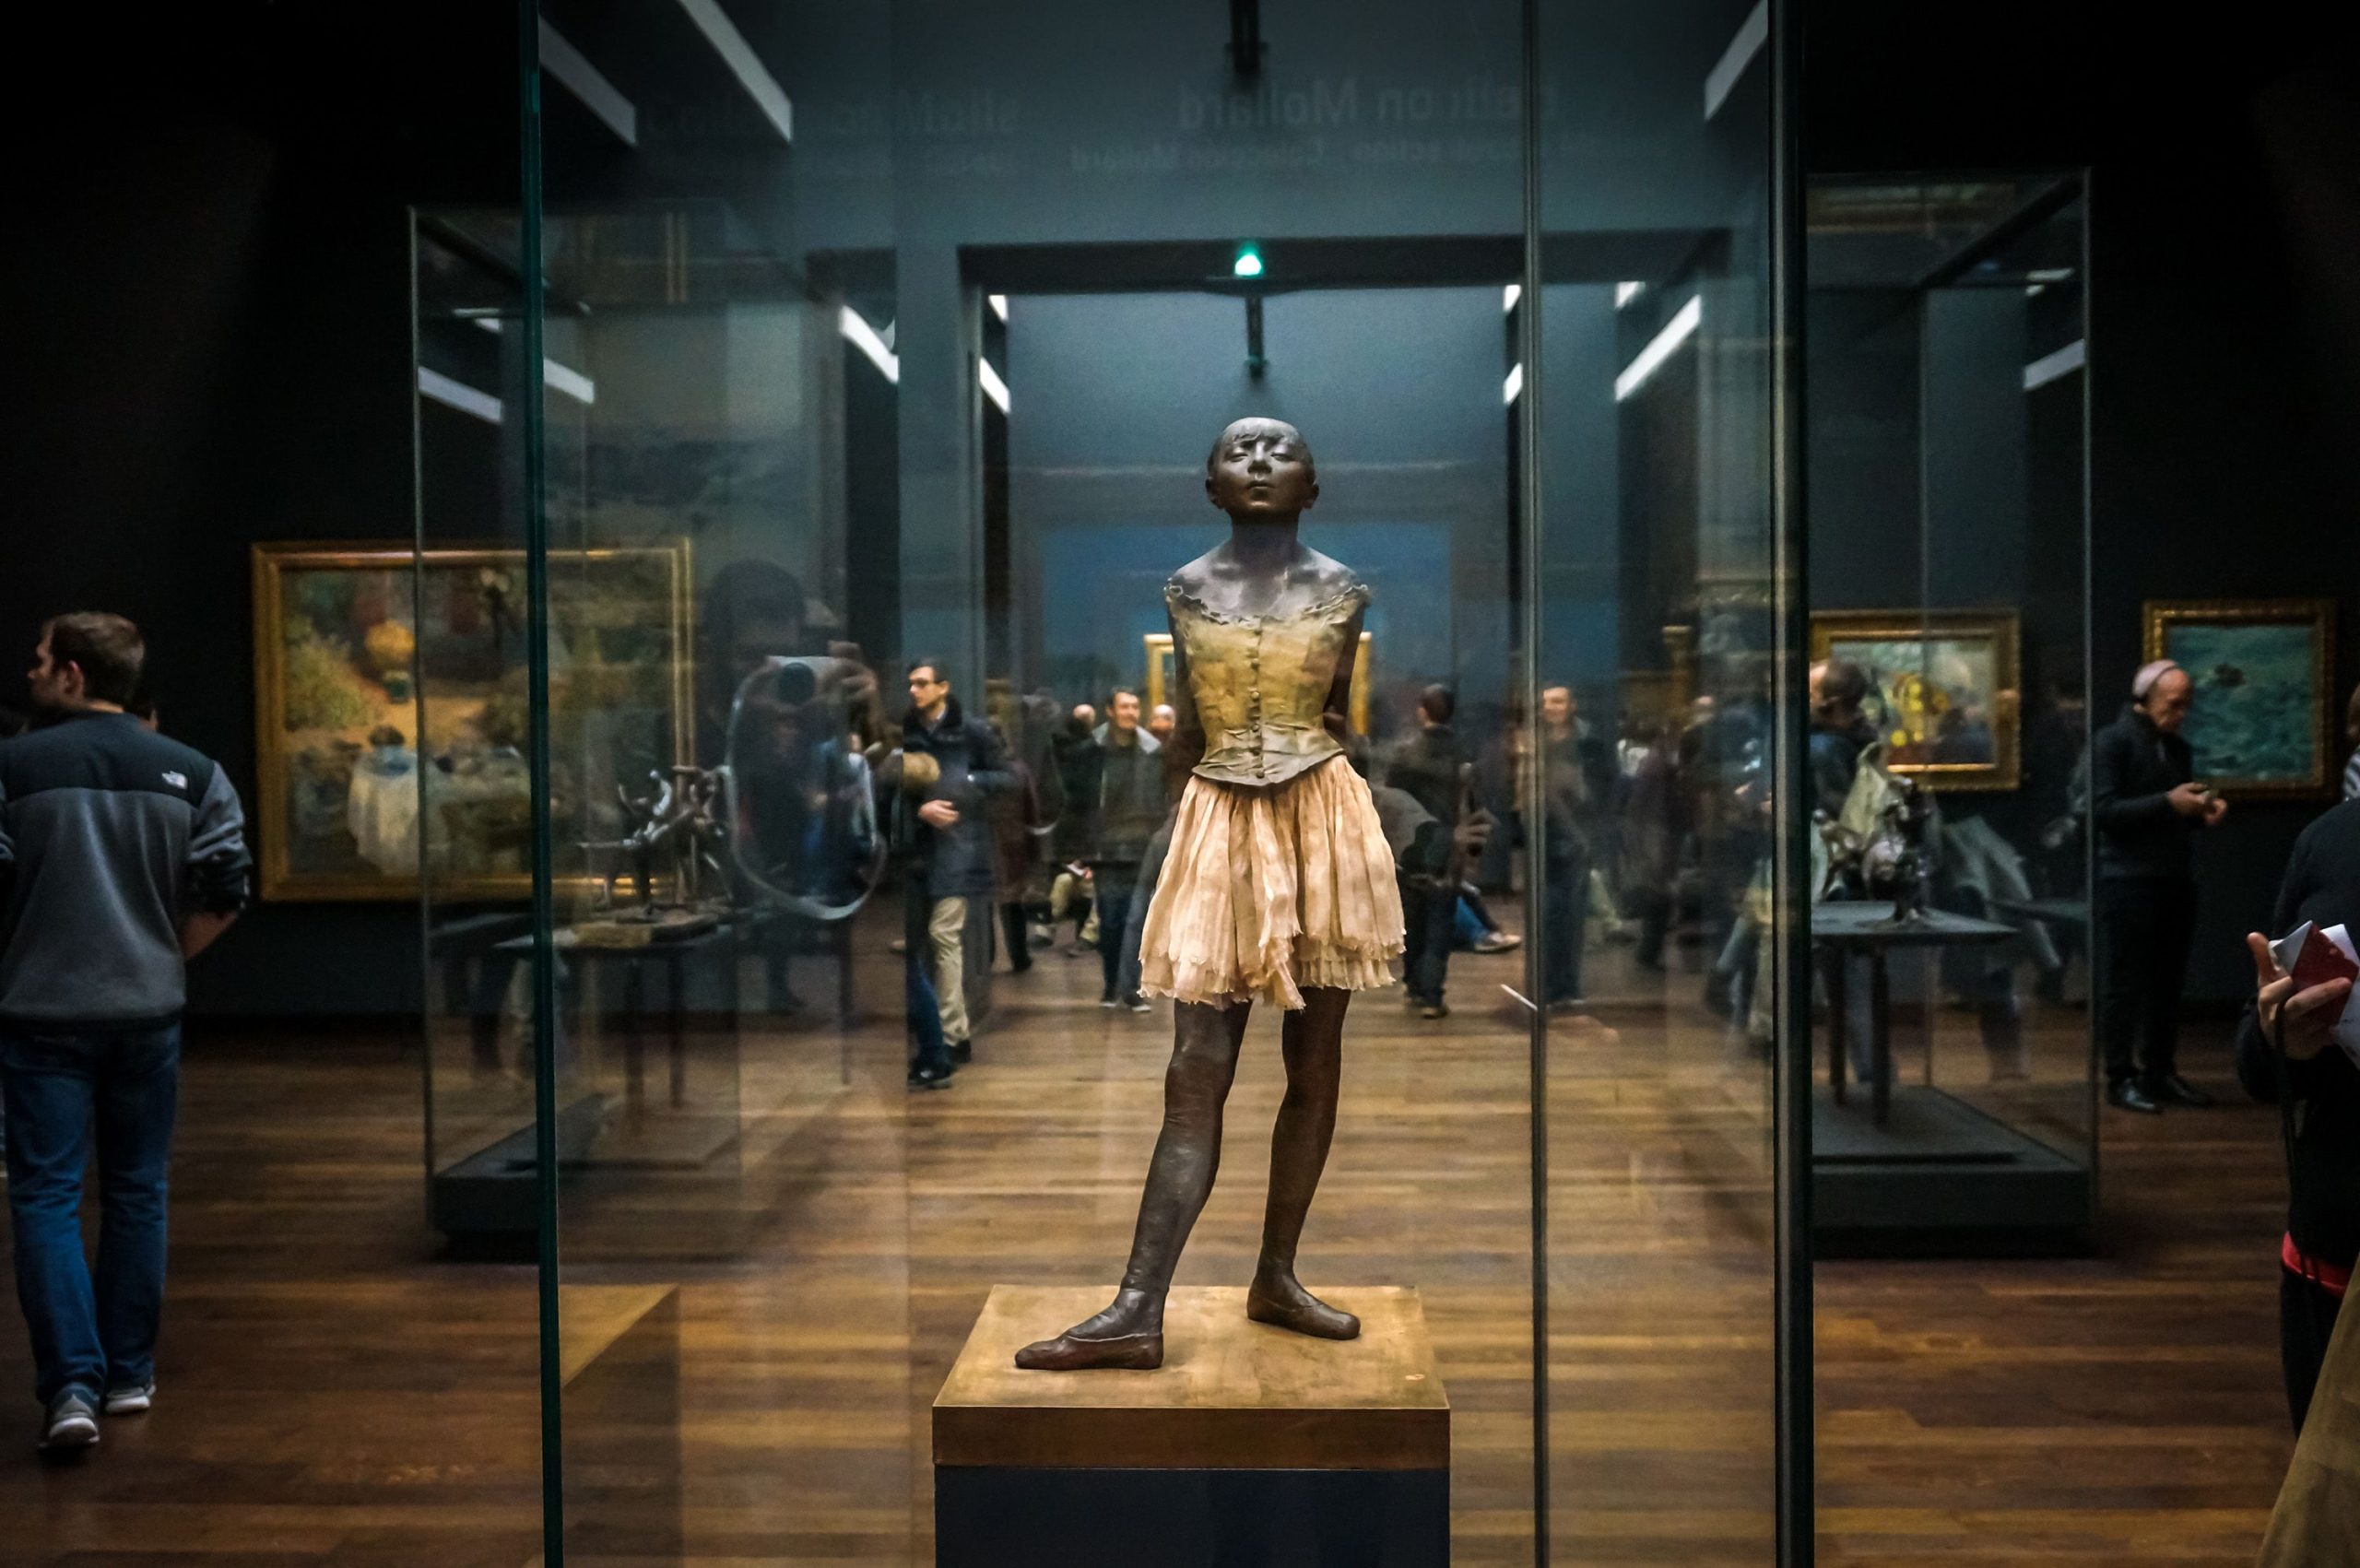 La triste storia dietro la famosa ballerina Degas